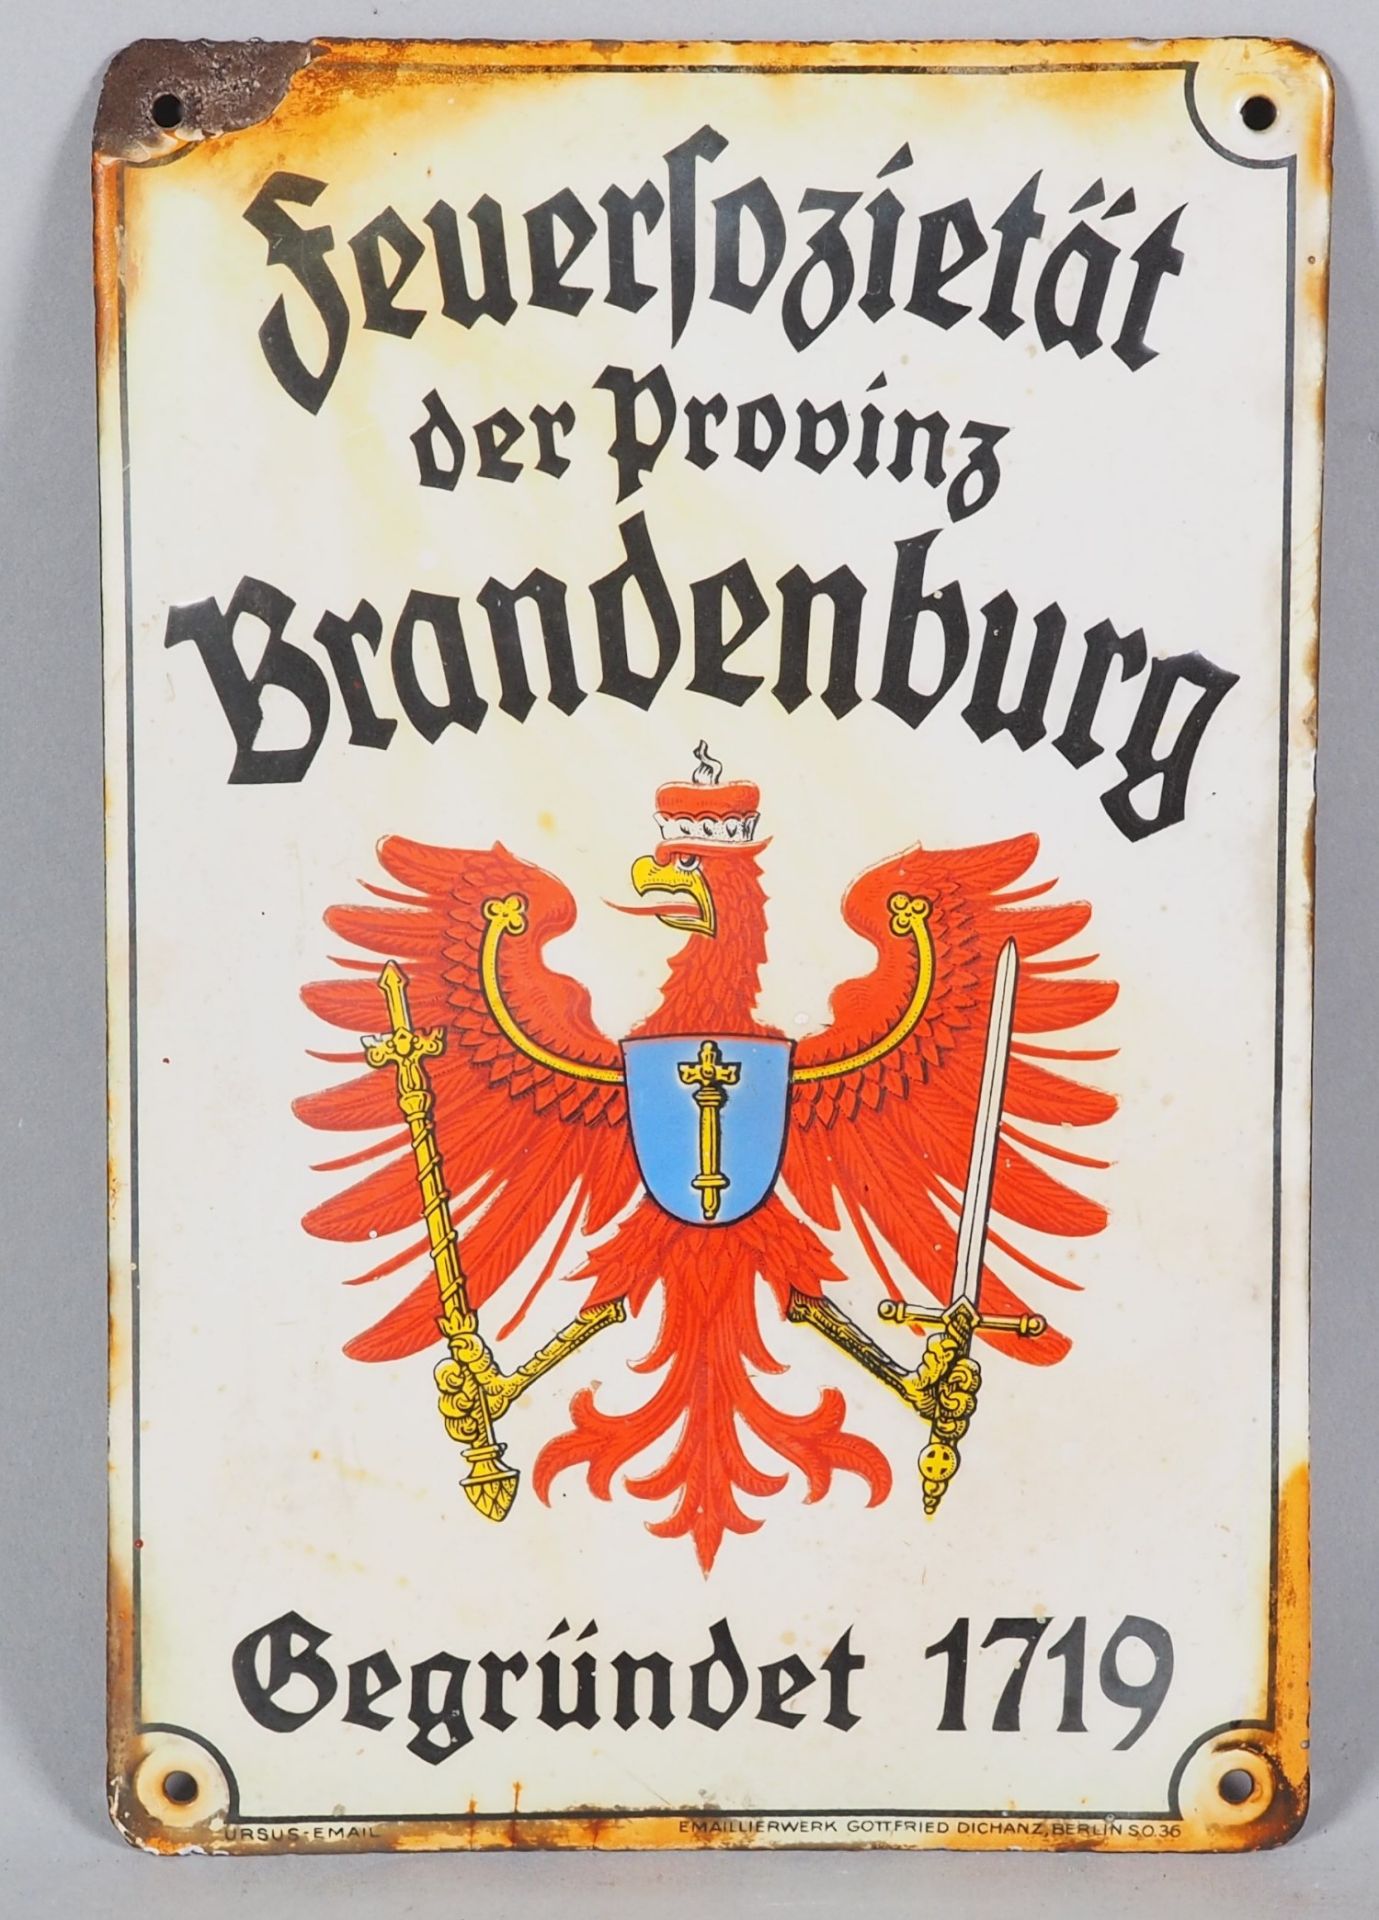 Antikes Emaille Schild "Feuersozietät der Provinz Brandenburg. Gegründet 1719"